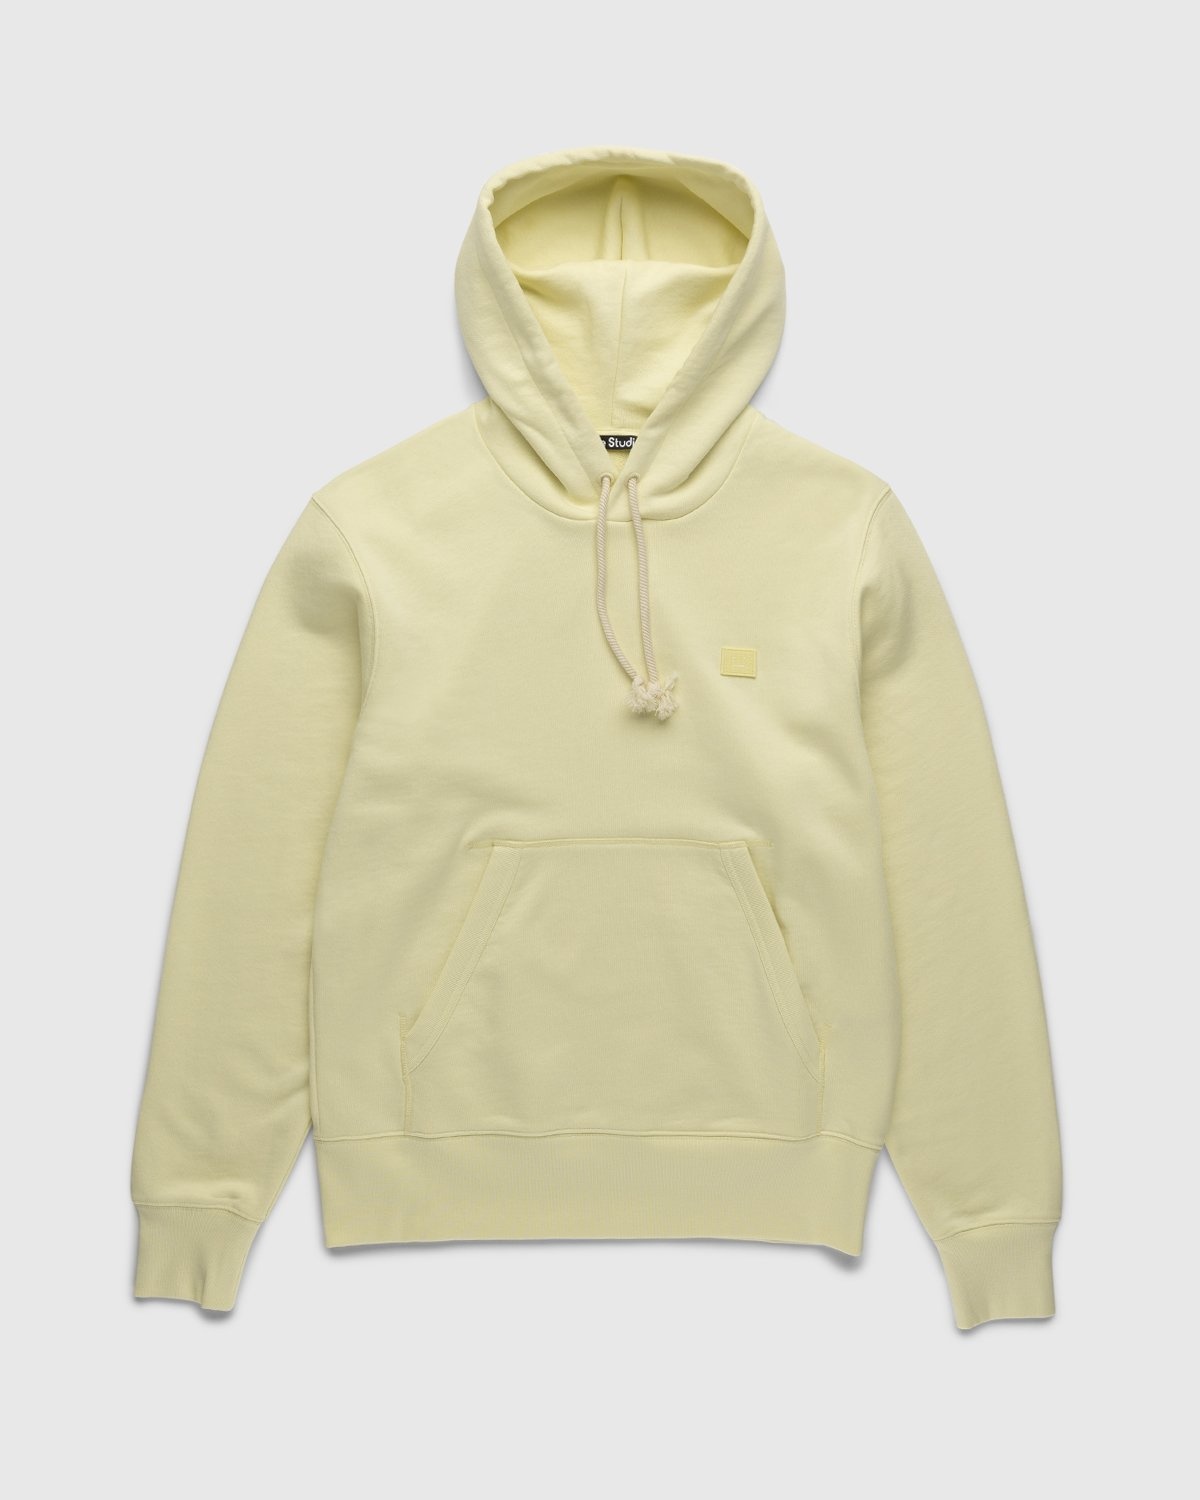 Acne Studios – Organic Cotton Hooded Sweatshirt Vanilla Yellow - Sweats - Yellow - Image 1